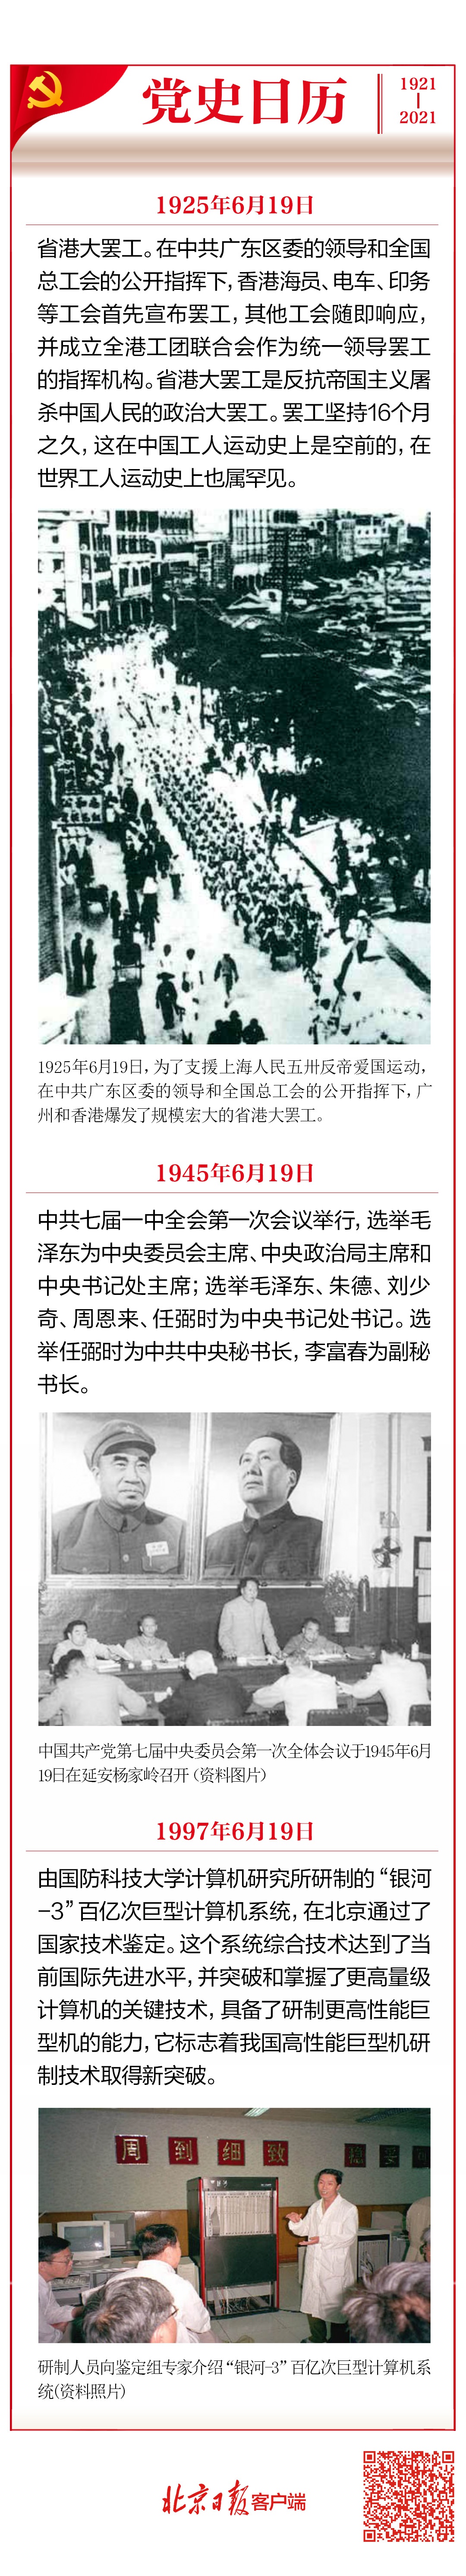 党史日历(6月19日)|中共七届一中全会选出"五大书记"